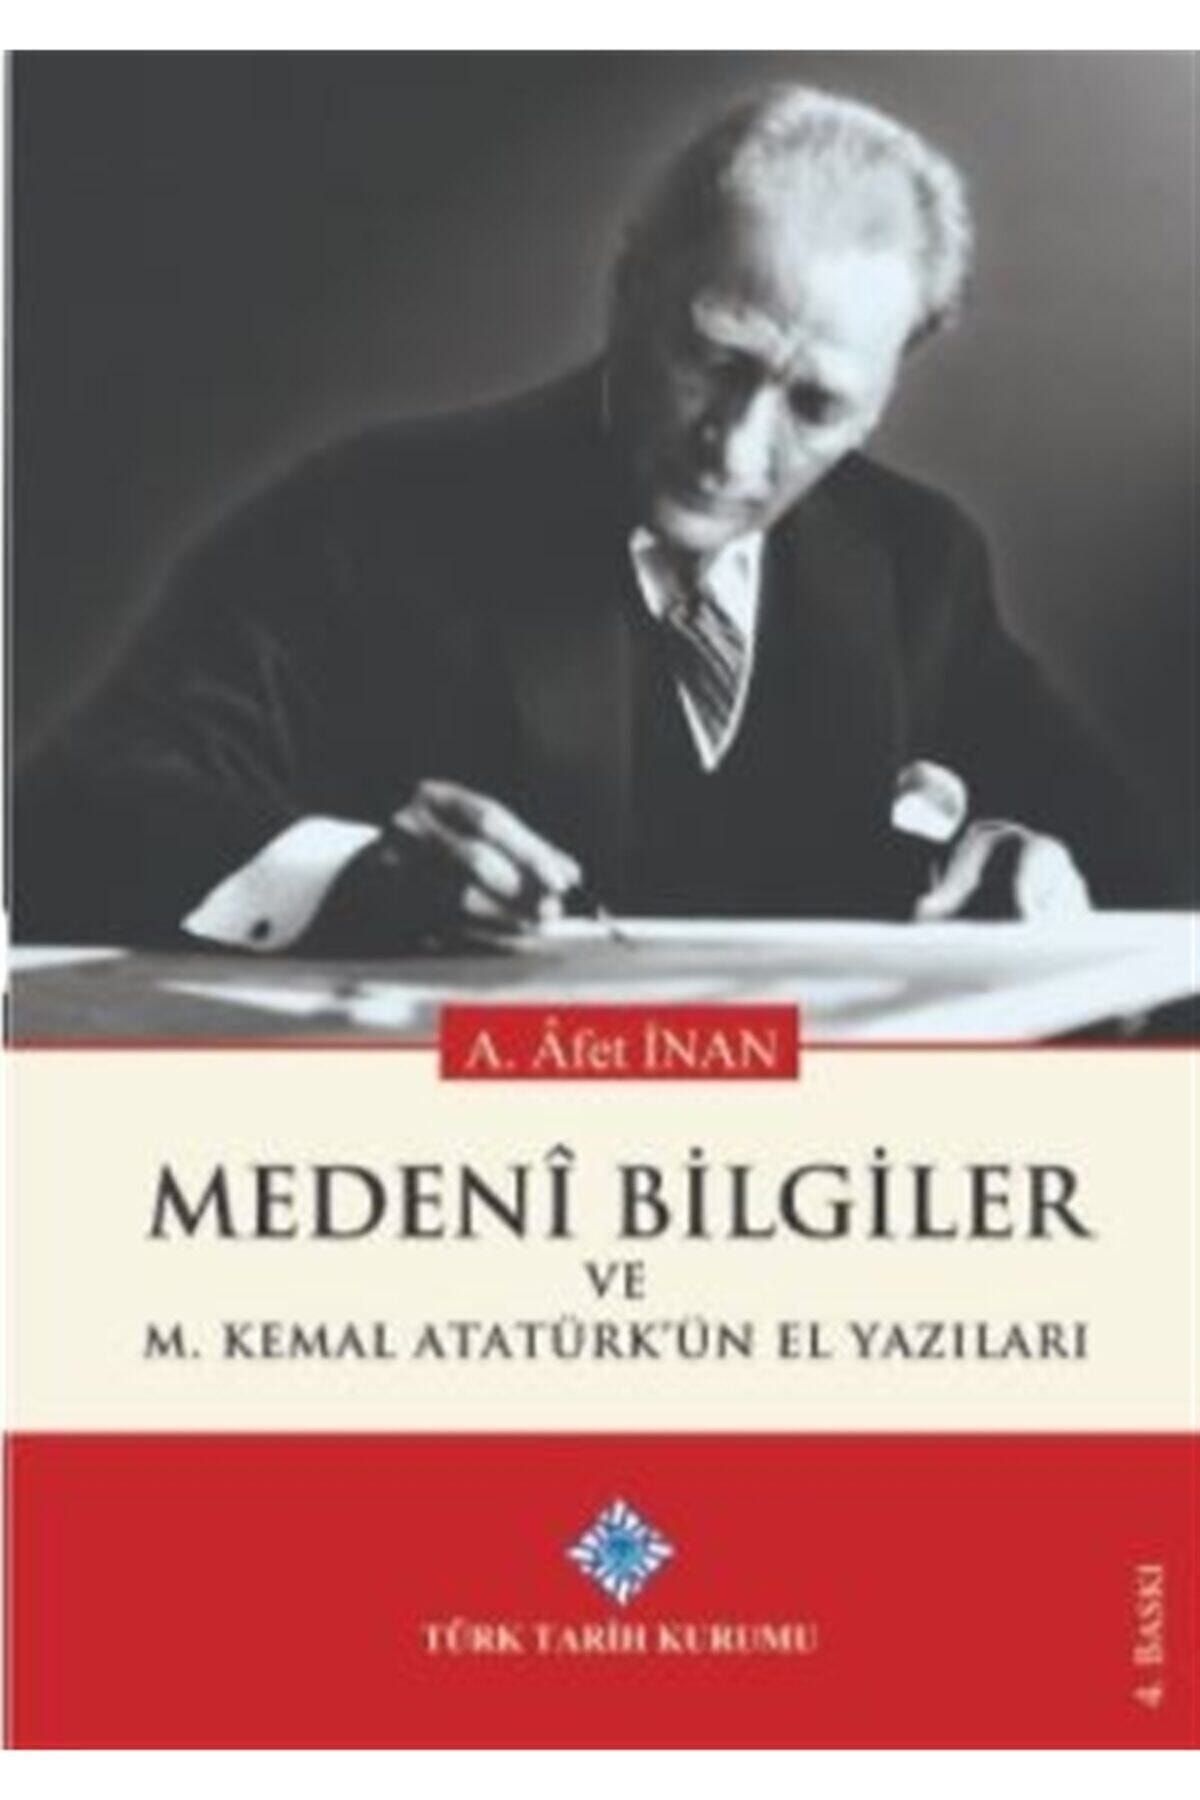 Türk Tarih Kurumu Yayınları Medeni Bilgiler Ve M. Kemal Atatürk'ün El Yazıları - Ayşe Afet Inan 9789751600462